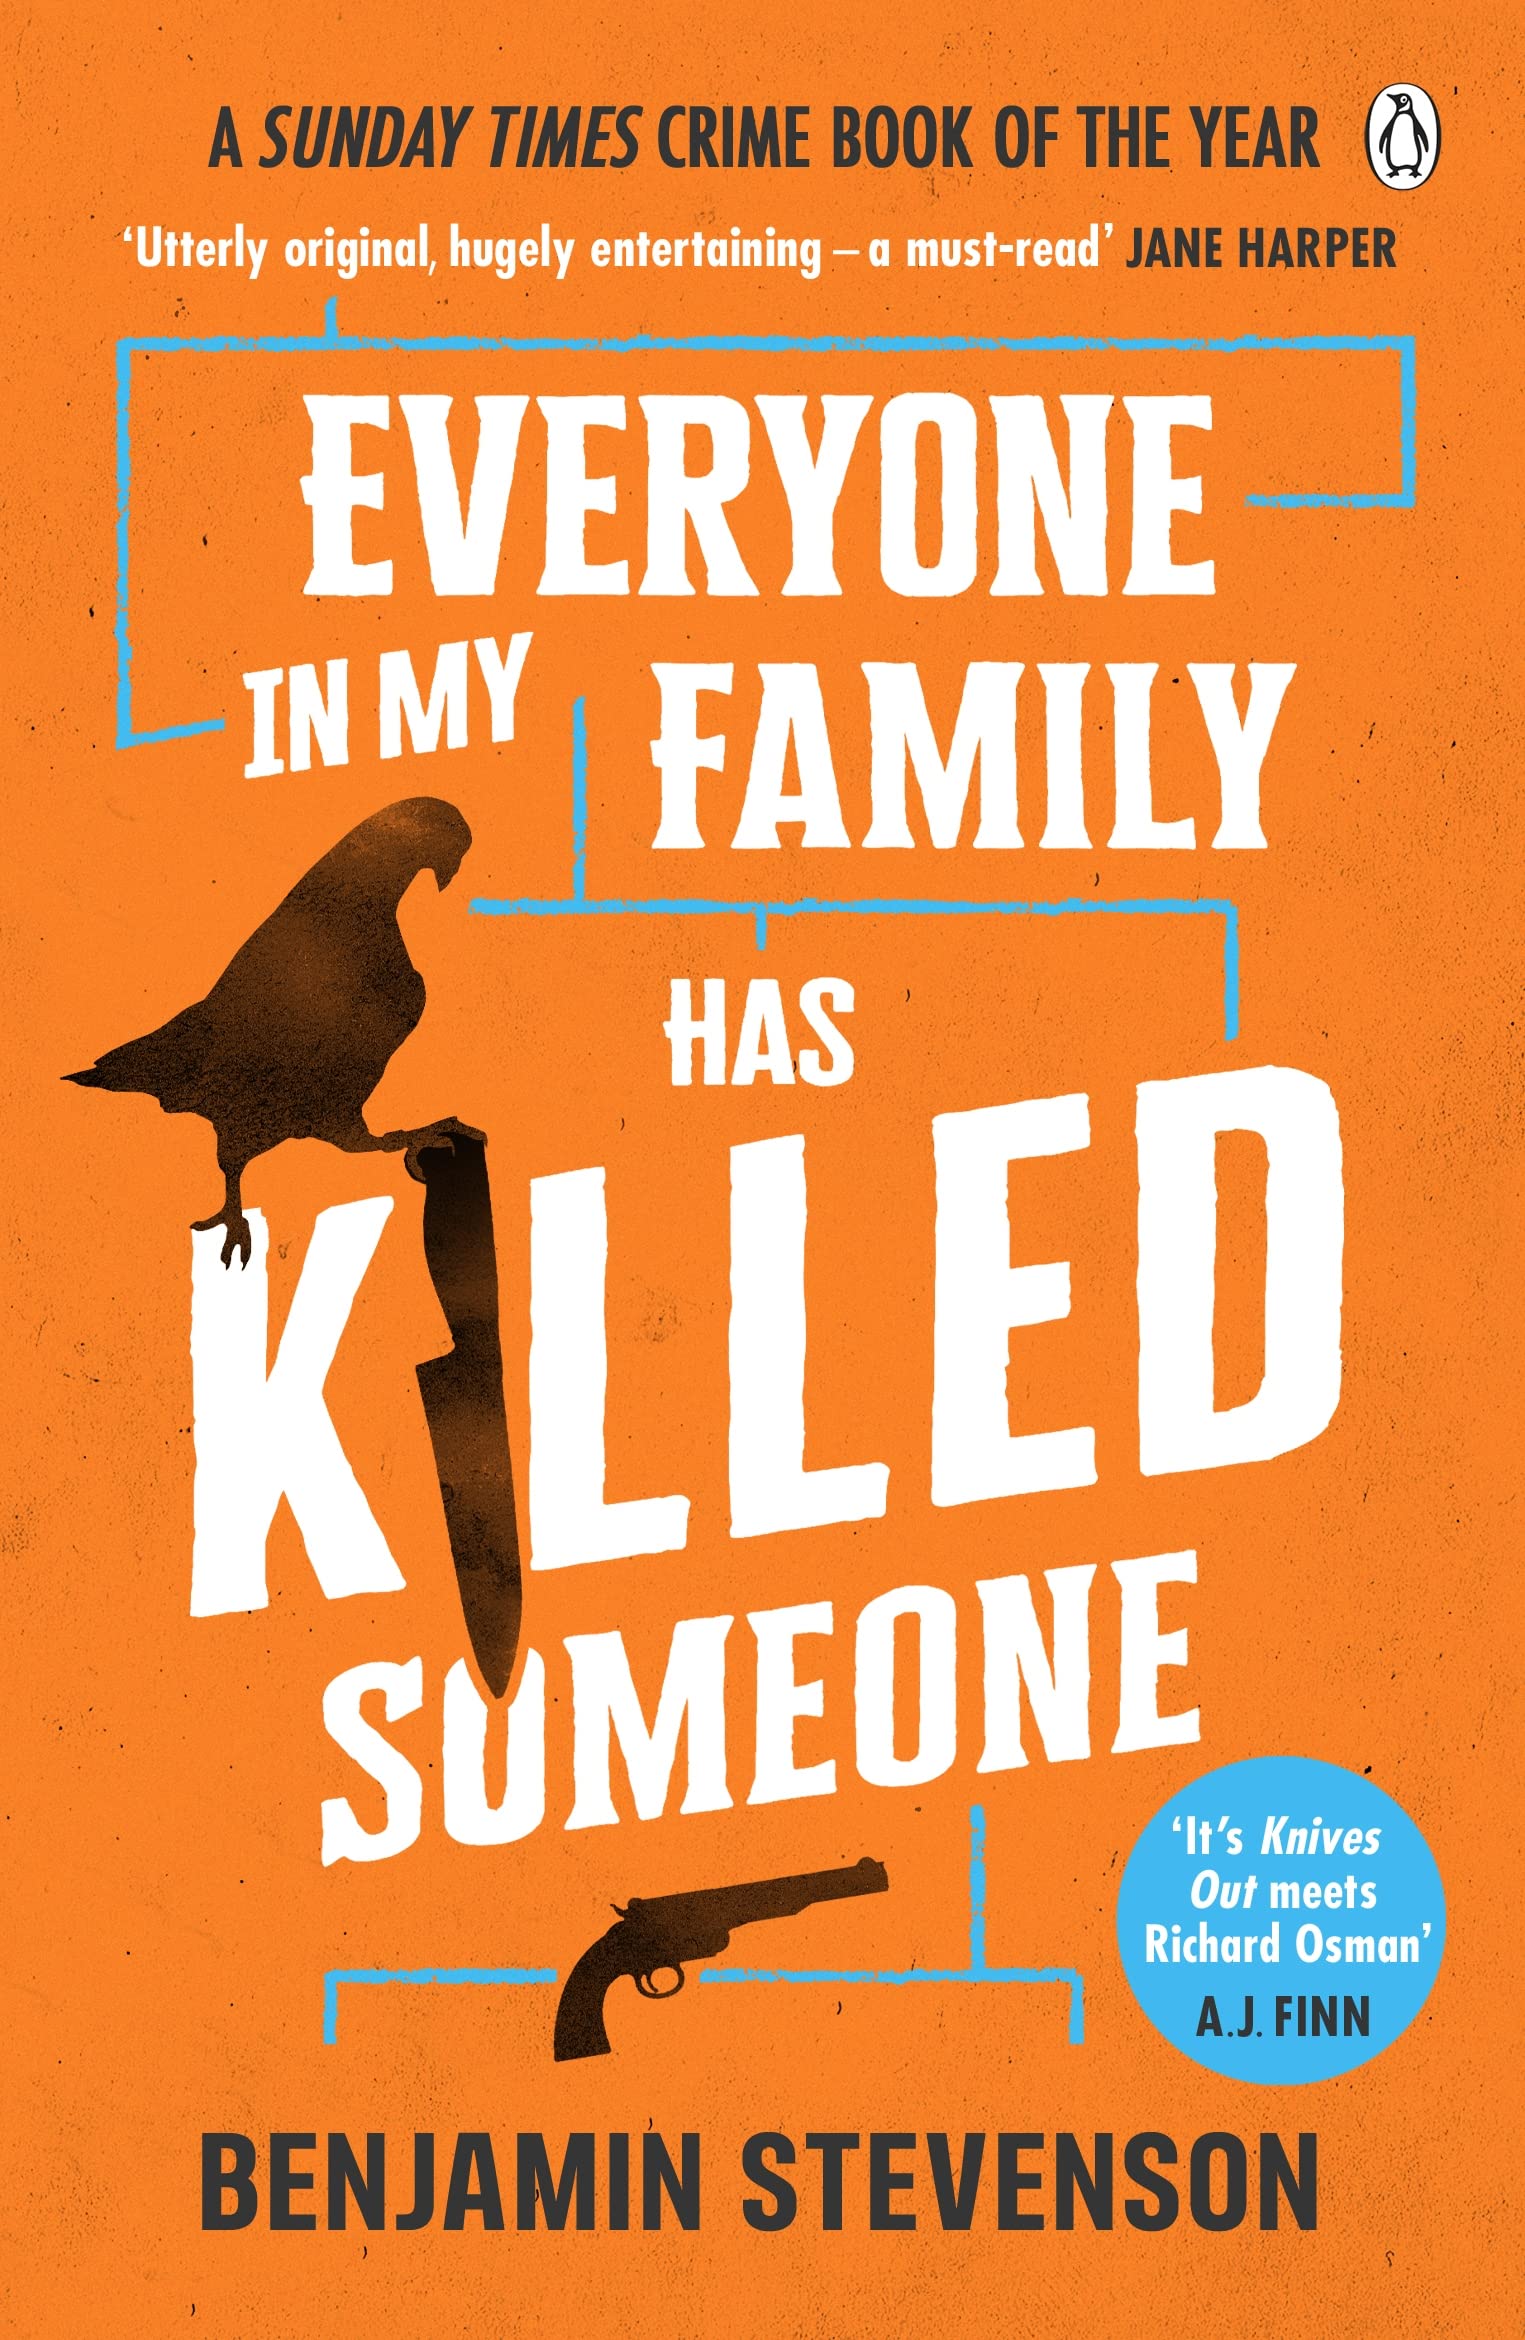 Everyone In My Family Has Killed Someone | Benjamin Stevenson